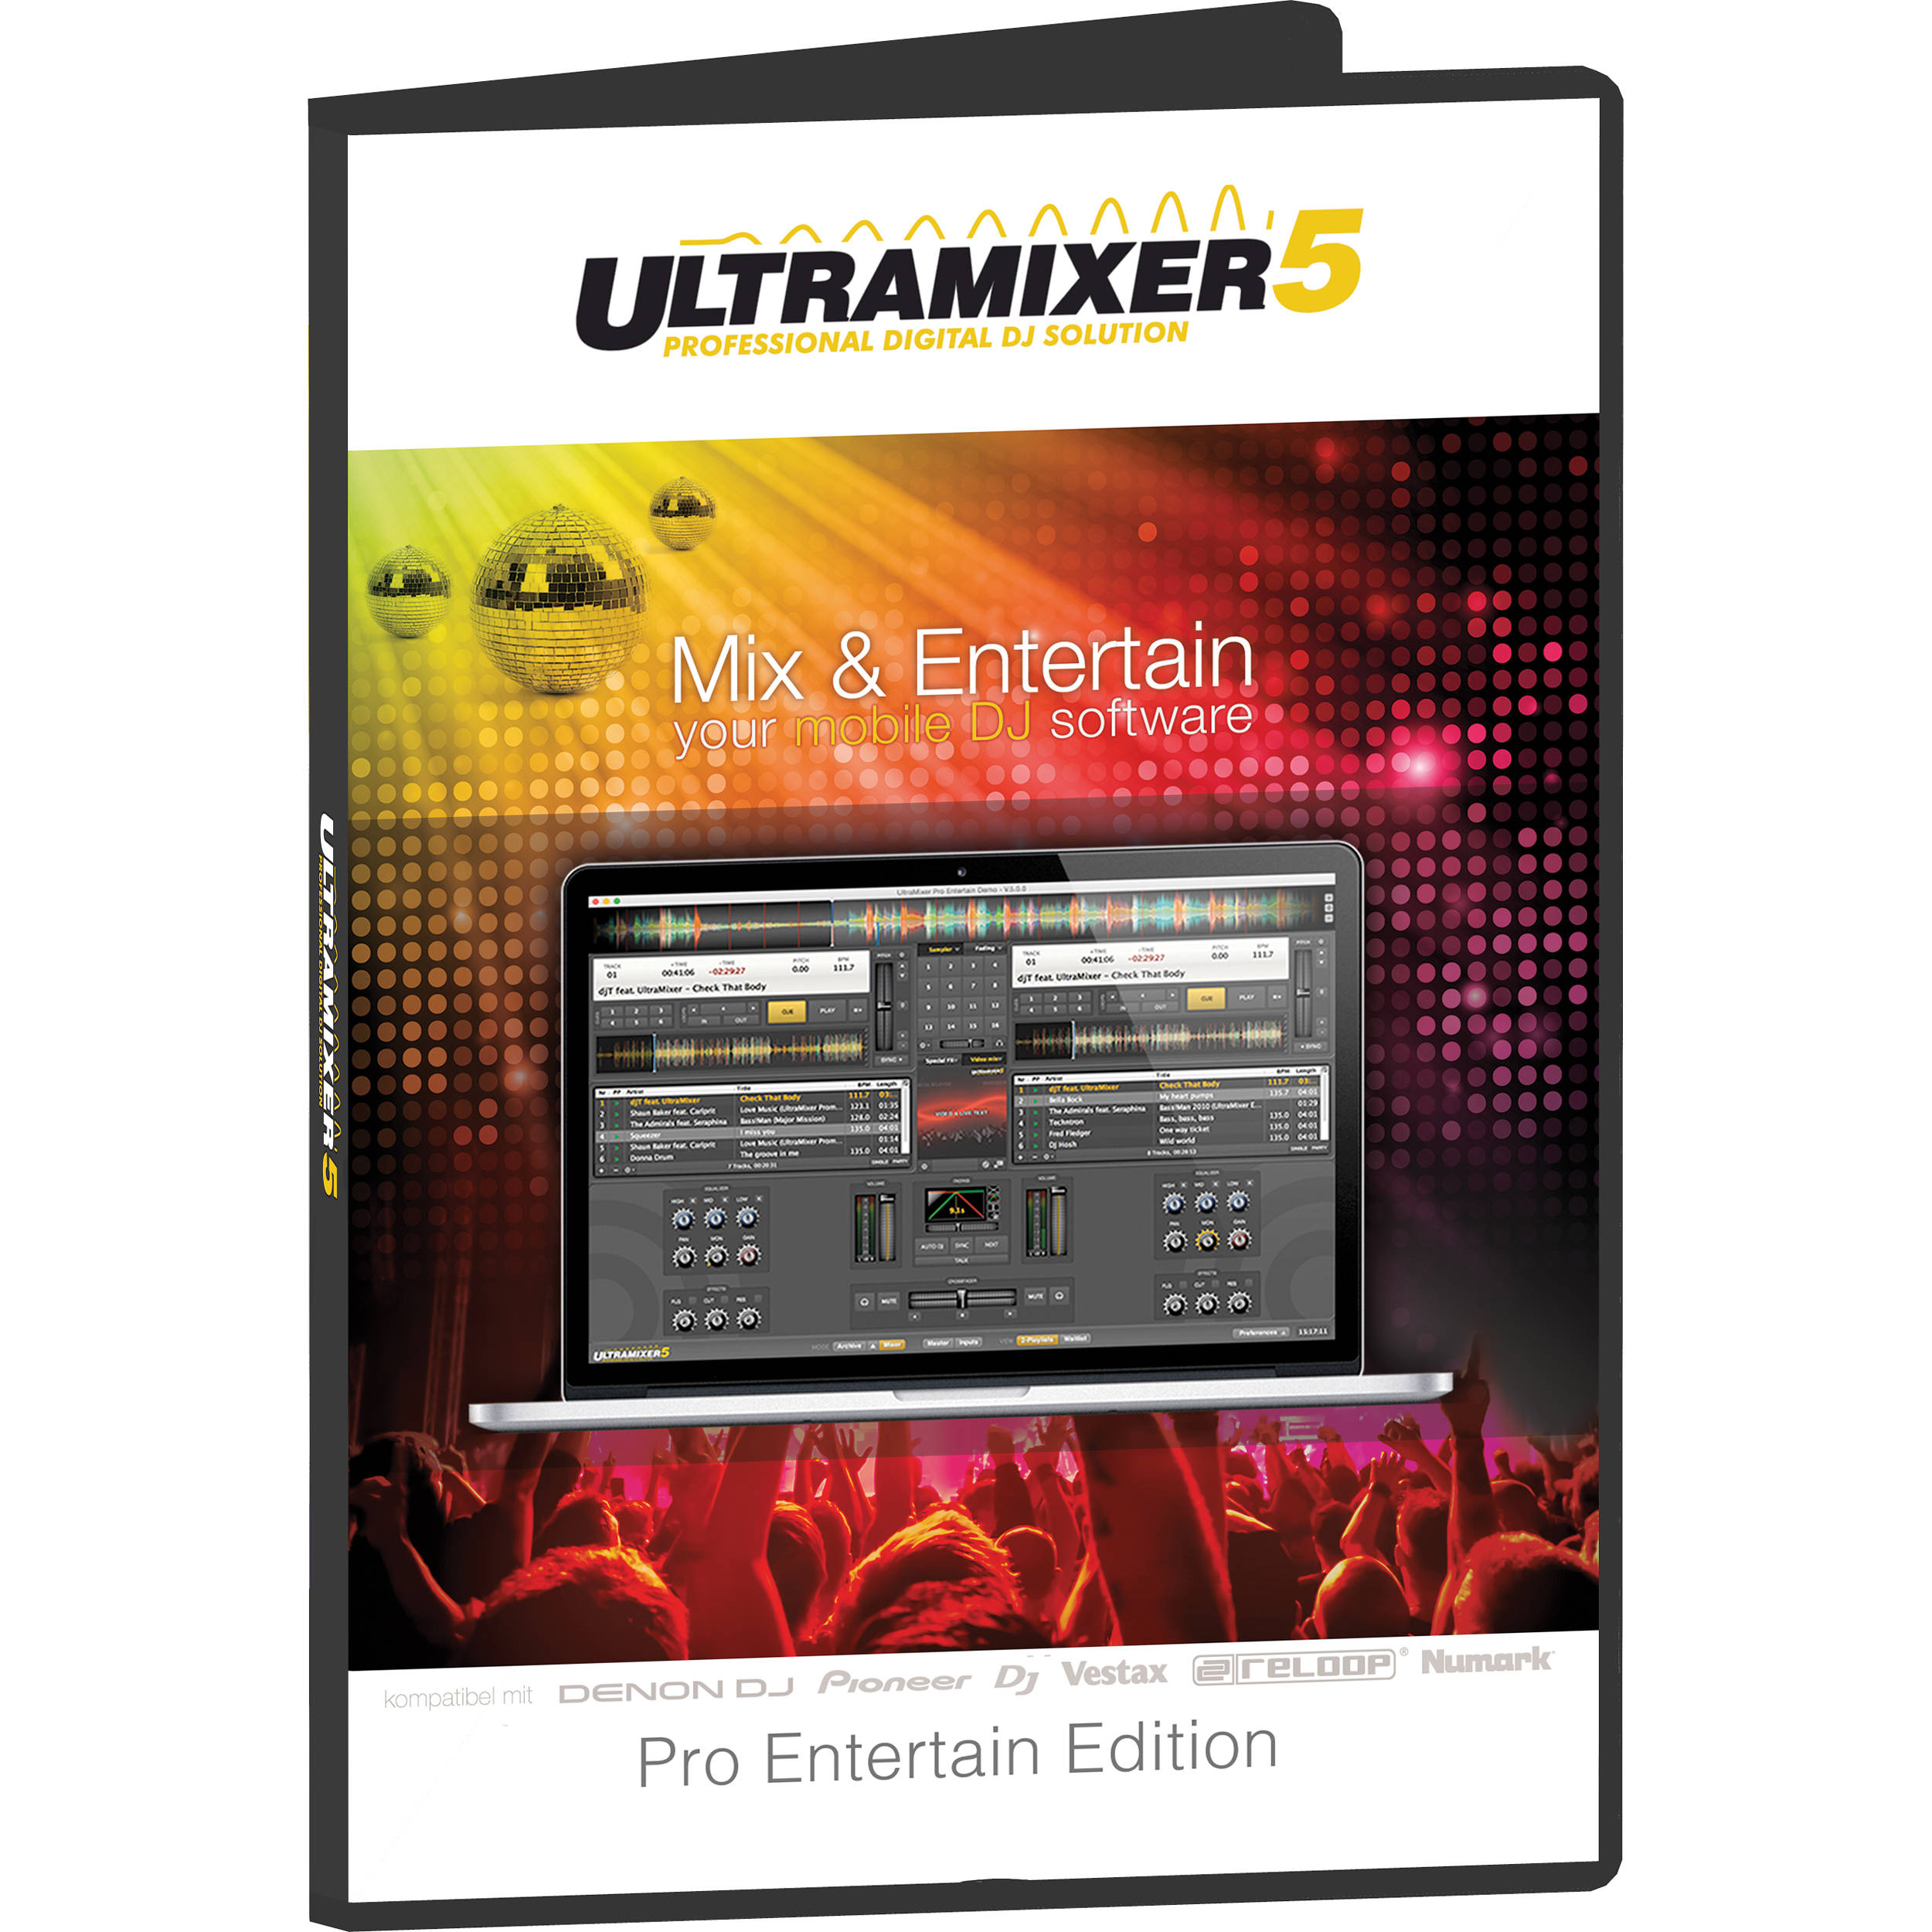 Ultramixer 5 skins download